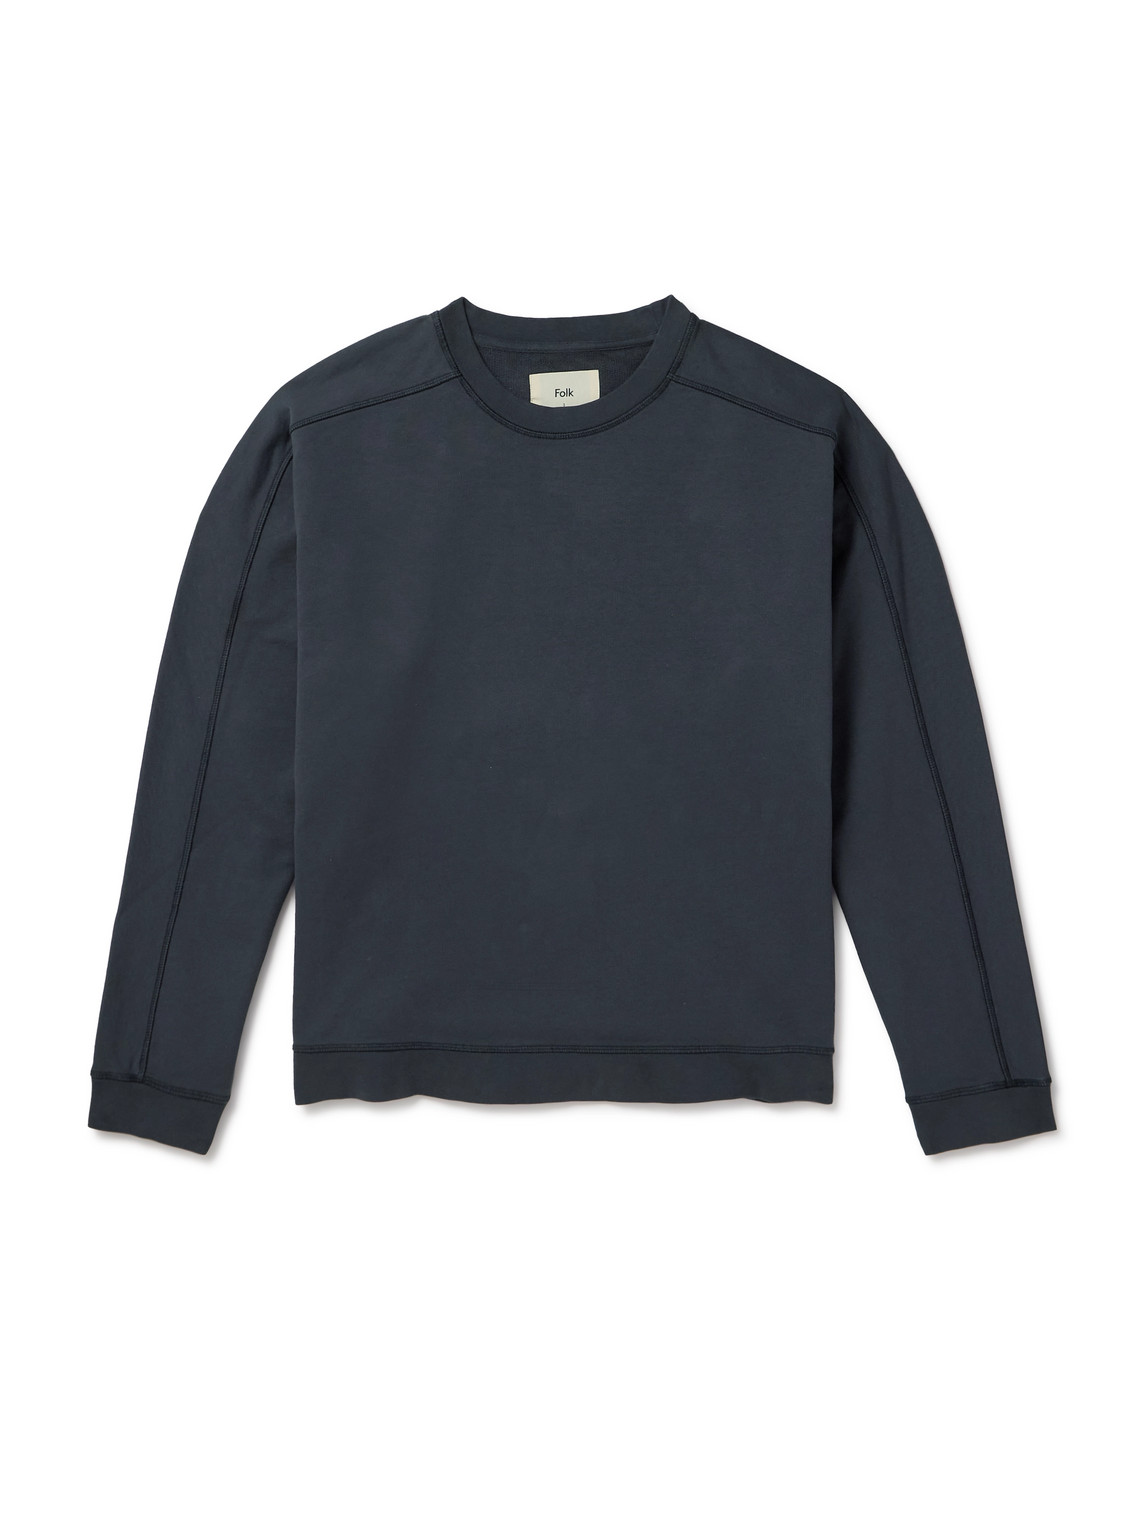 Folk Prism Embroidered Cotton-jersey Sweatshirt In Grey